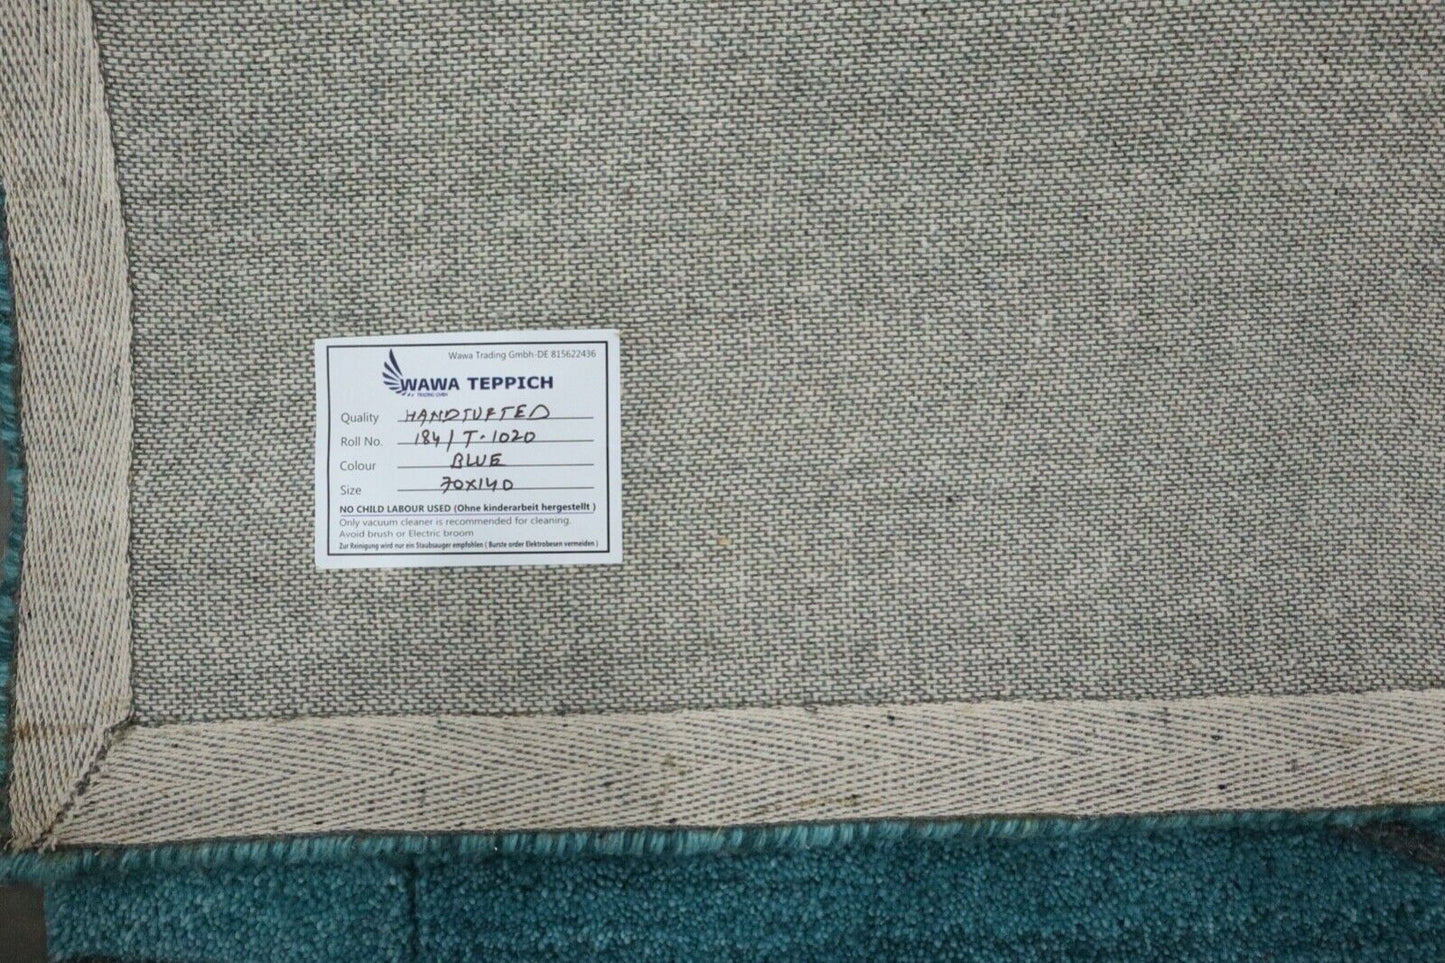 Gabbeh Teppich 100% Wolle 70X140 cm Handarbeit Hell Blau Handgetuftet T1020